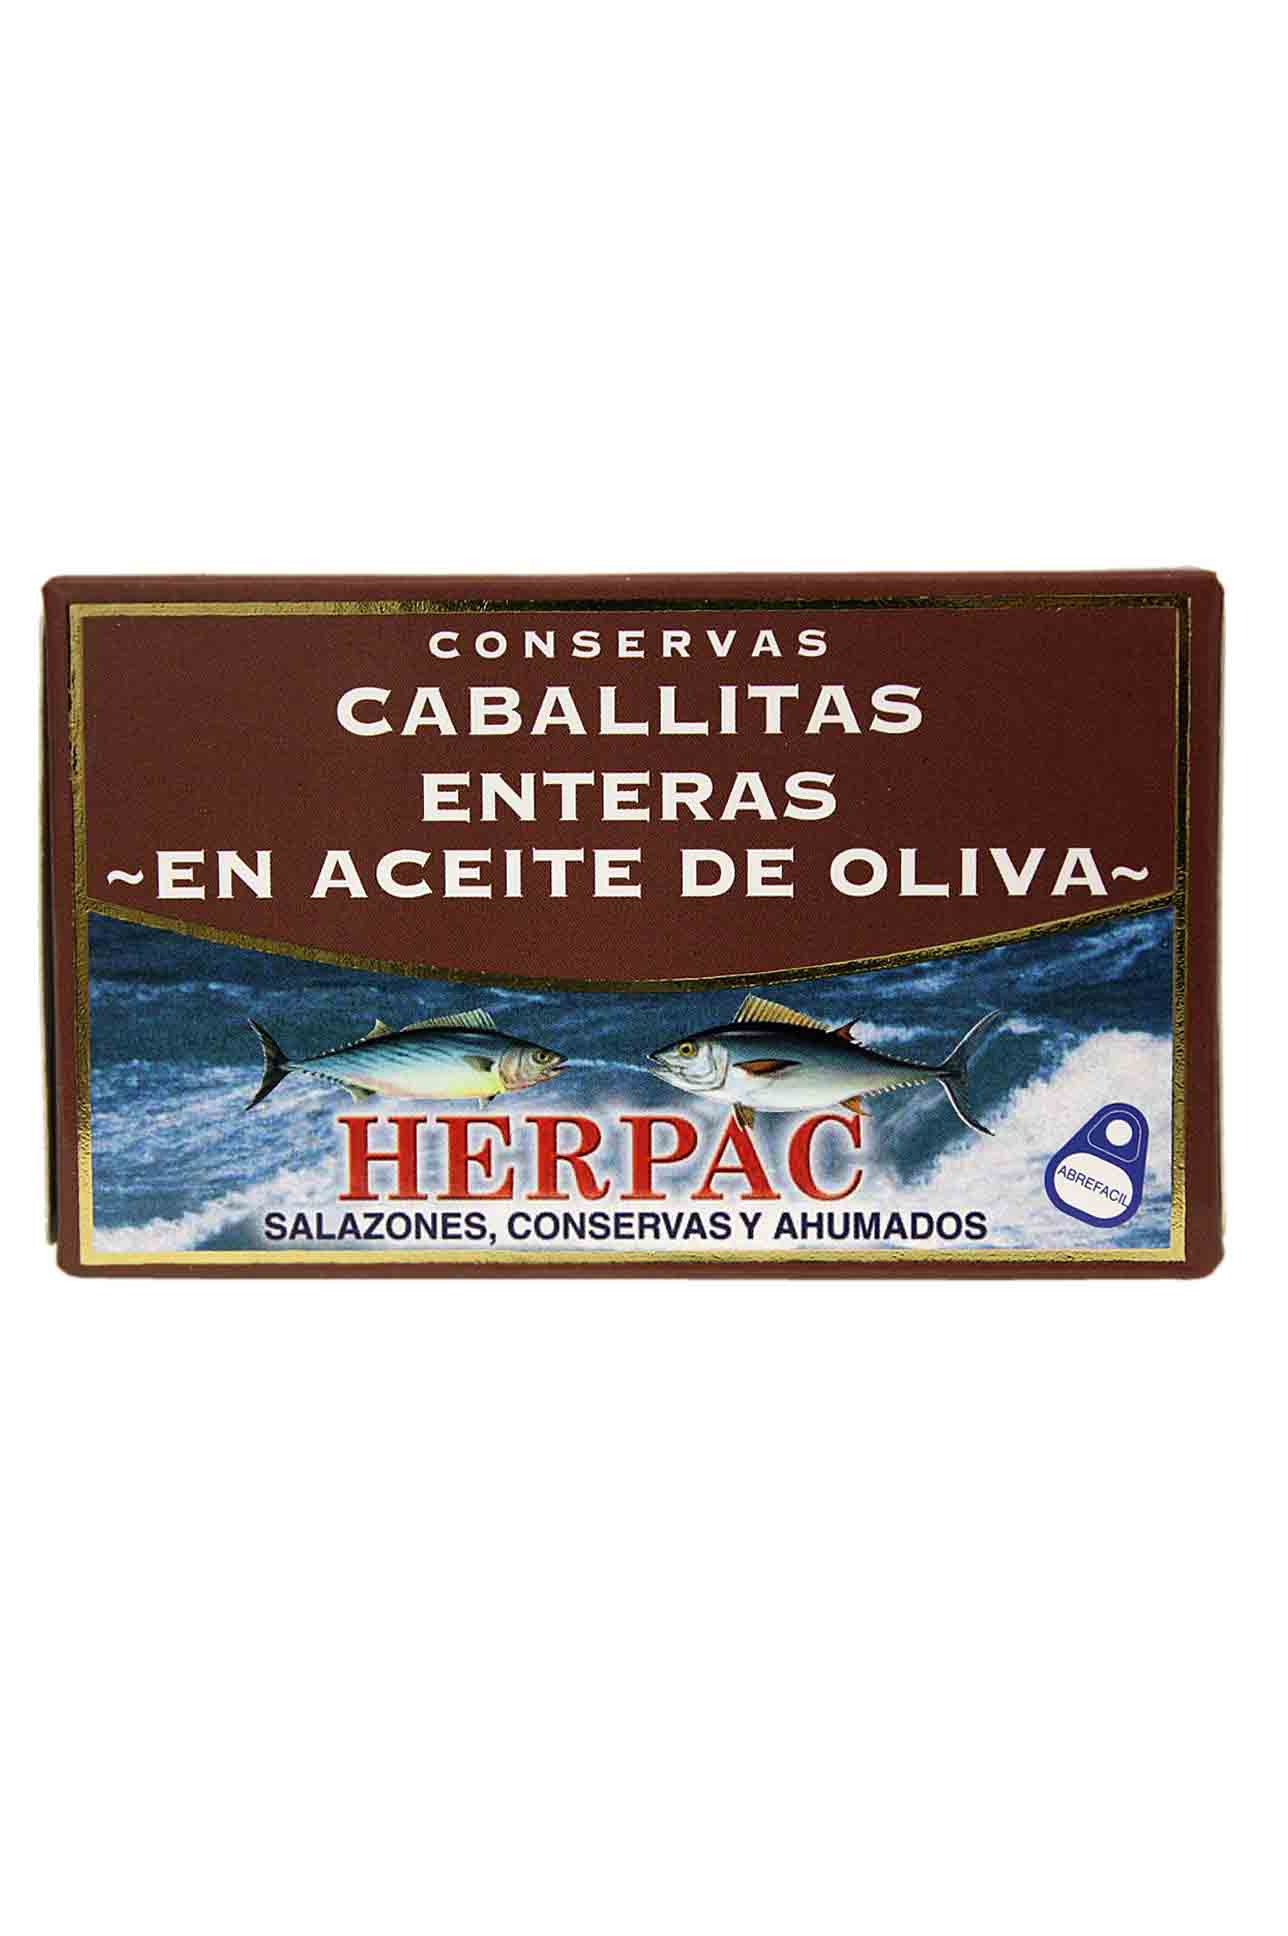 Caballas Enteras En Aceite De Oliva Herpac